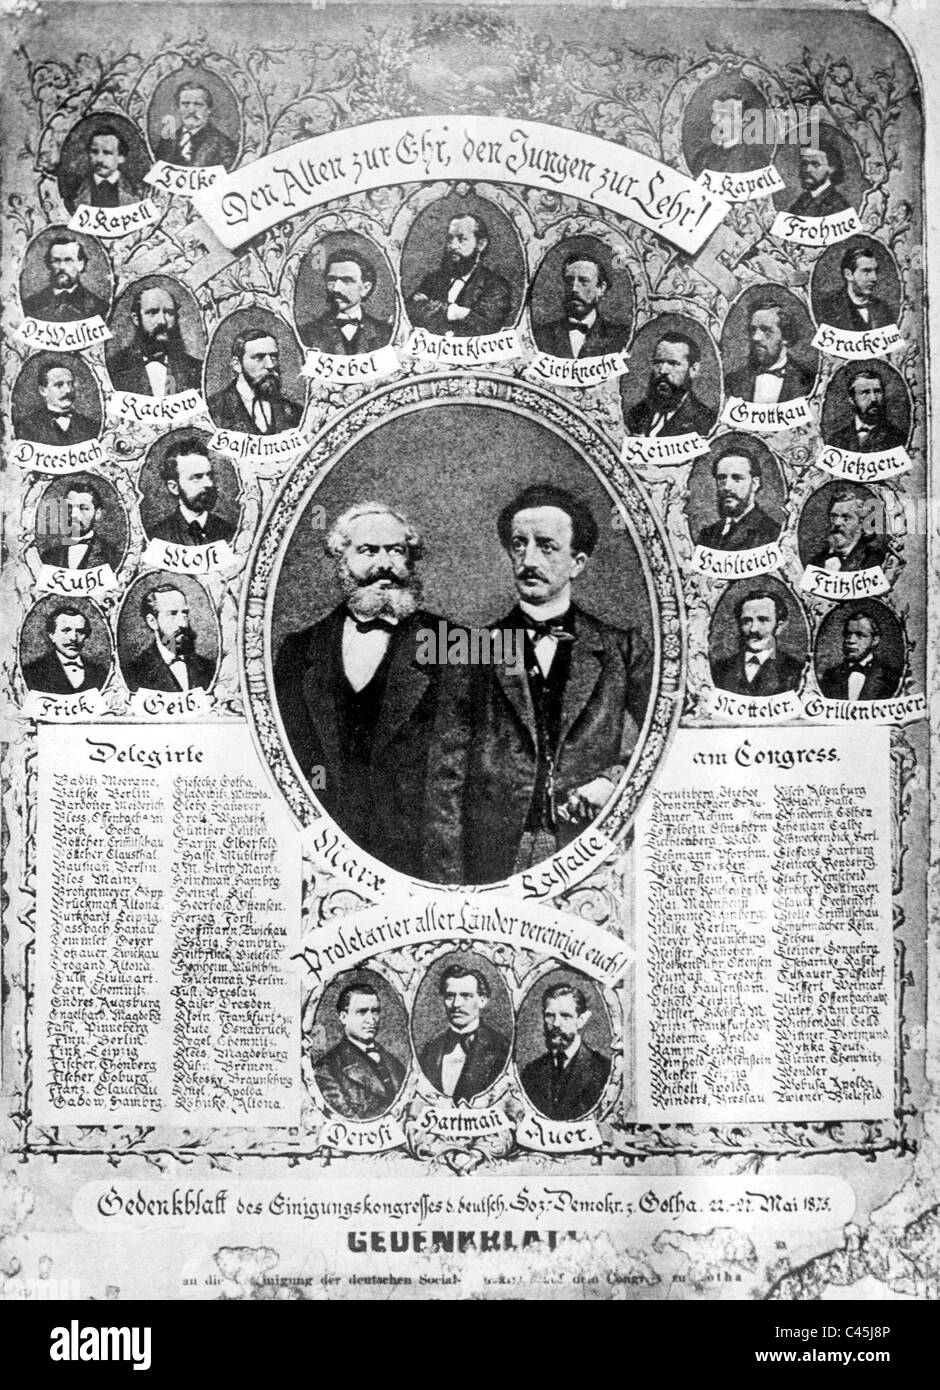 Revista conmemorativa del congreso de unificación de los SPD, 1875 Foto de stock